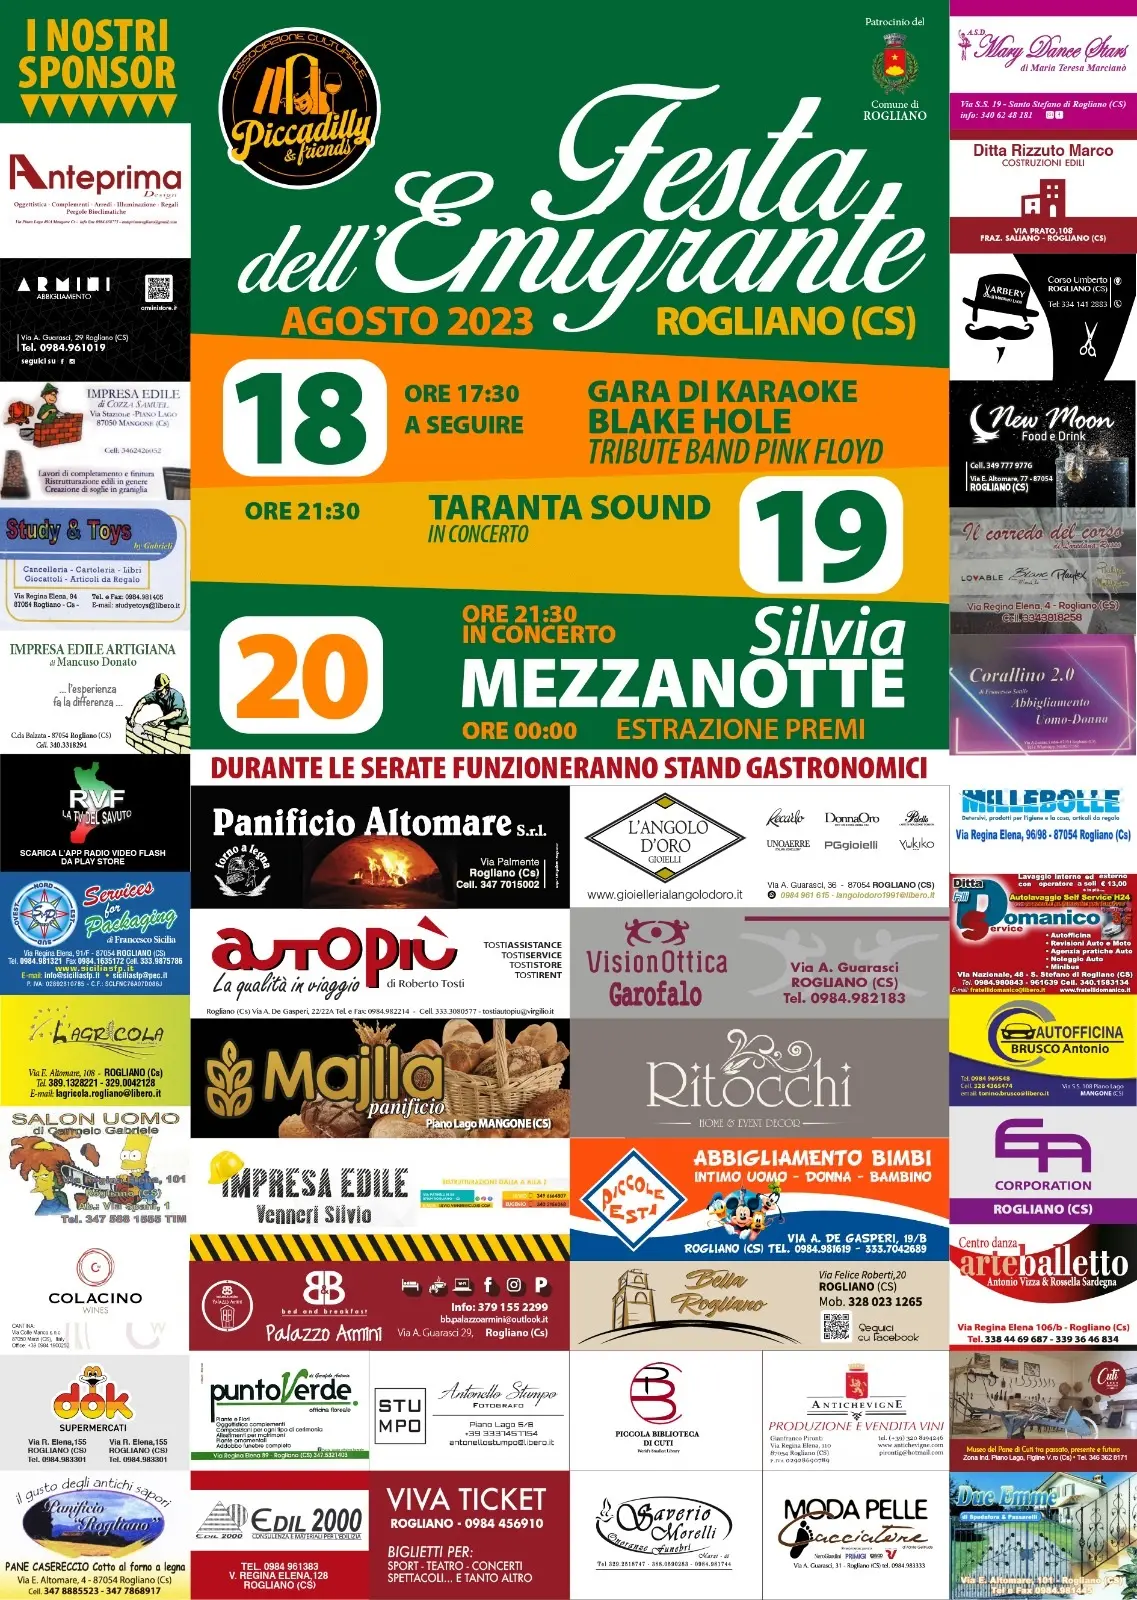 Festa Emigrante Rogliano 2023